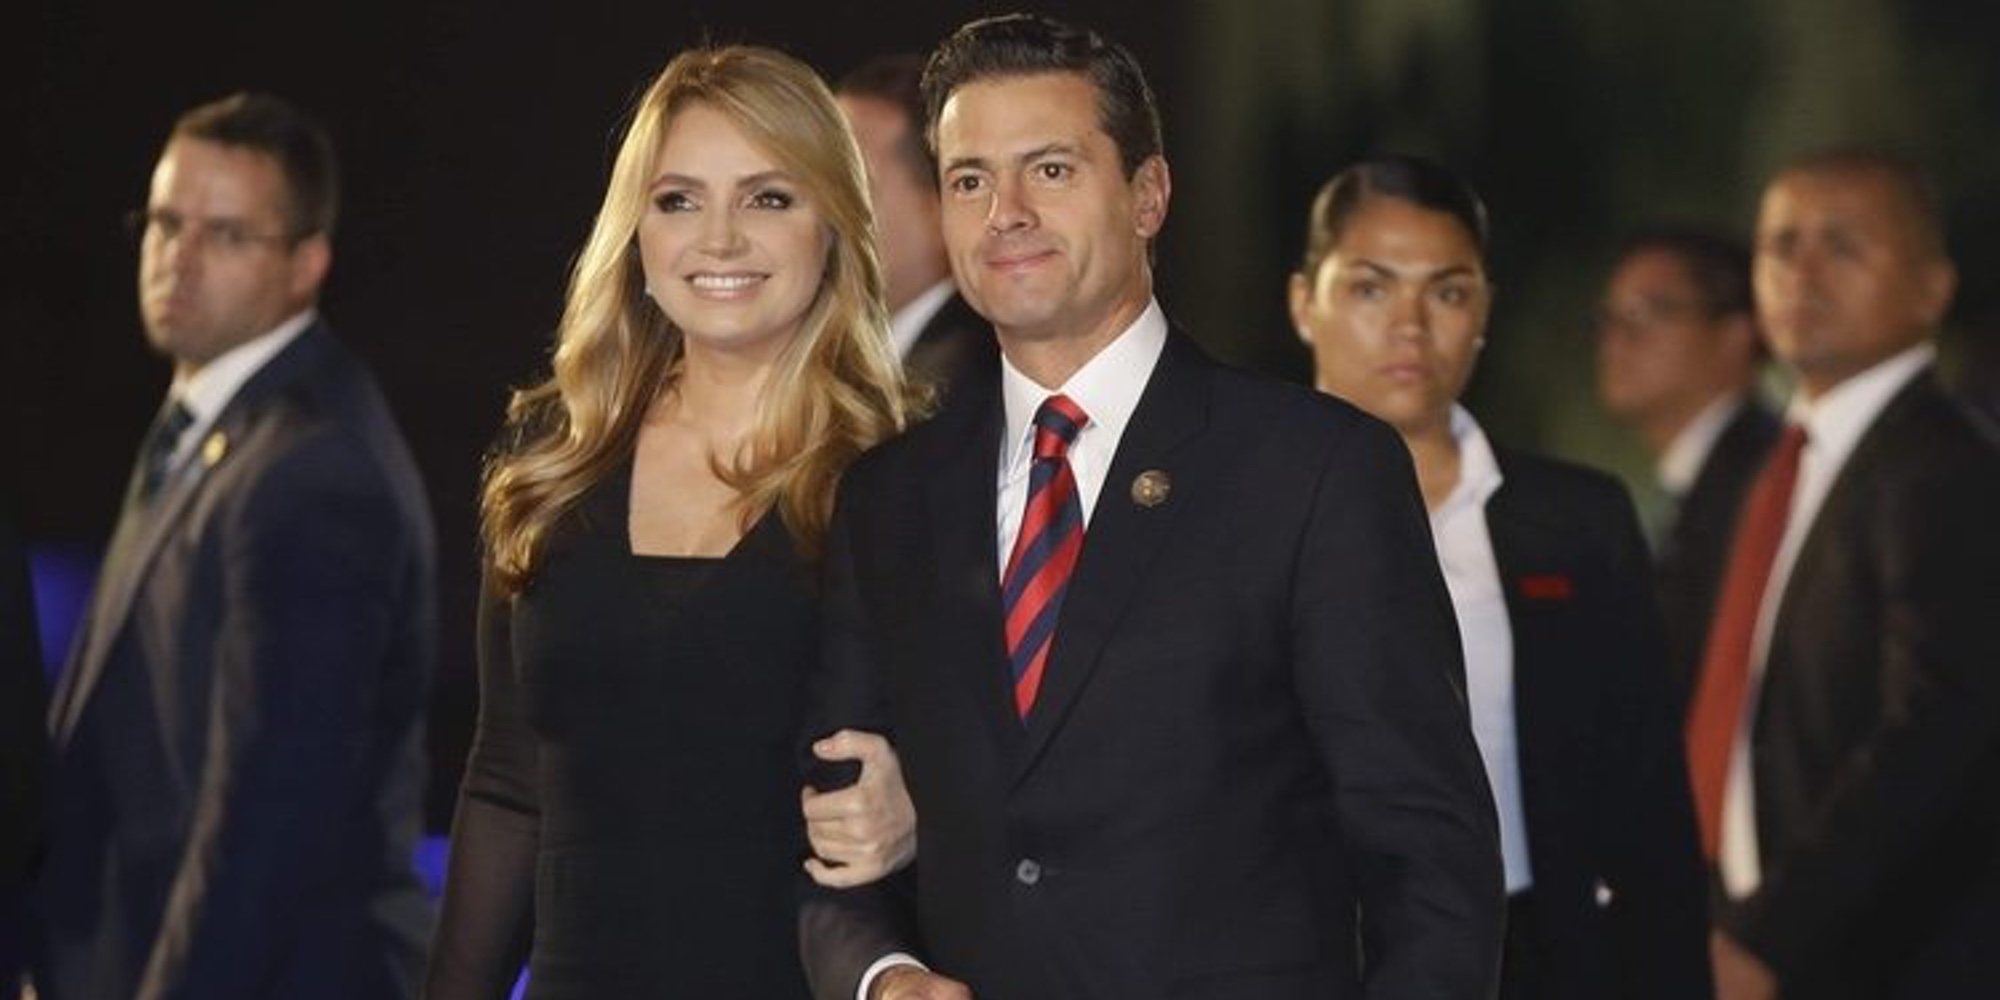 Angélica Rivera confirma su divorcio de Enrique Peña Nieto: "Siempre le entregué con amor mi tiempo y esfuerzo"